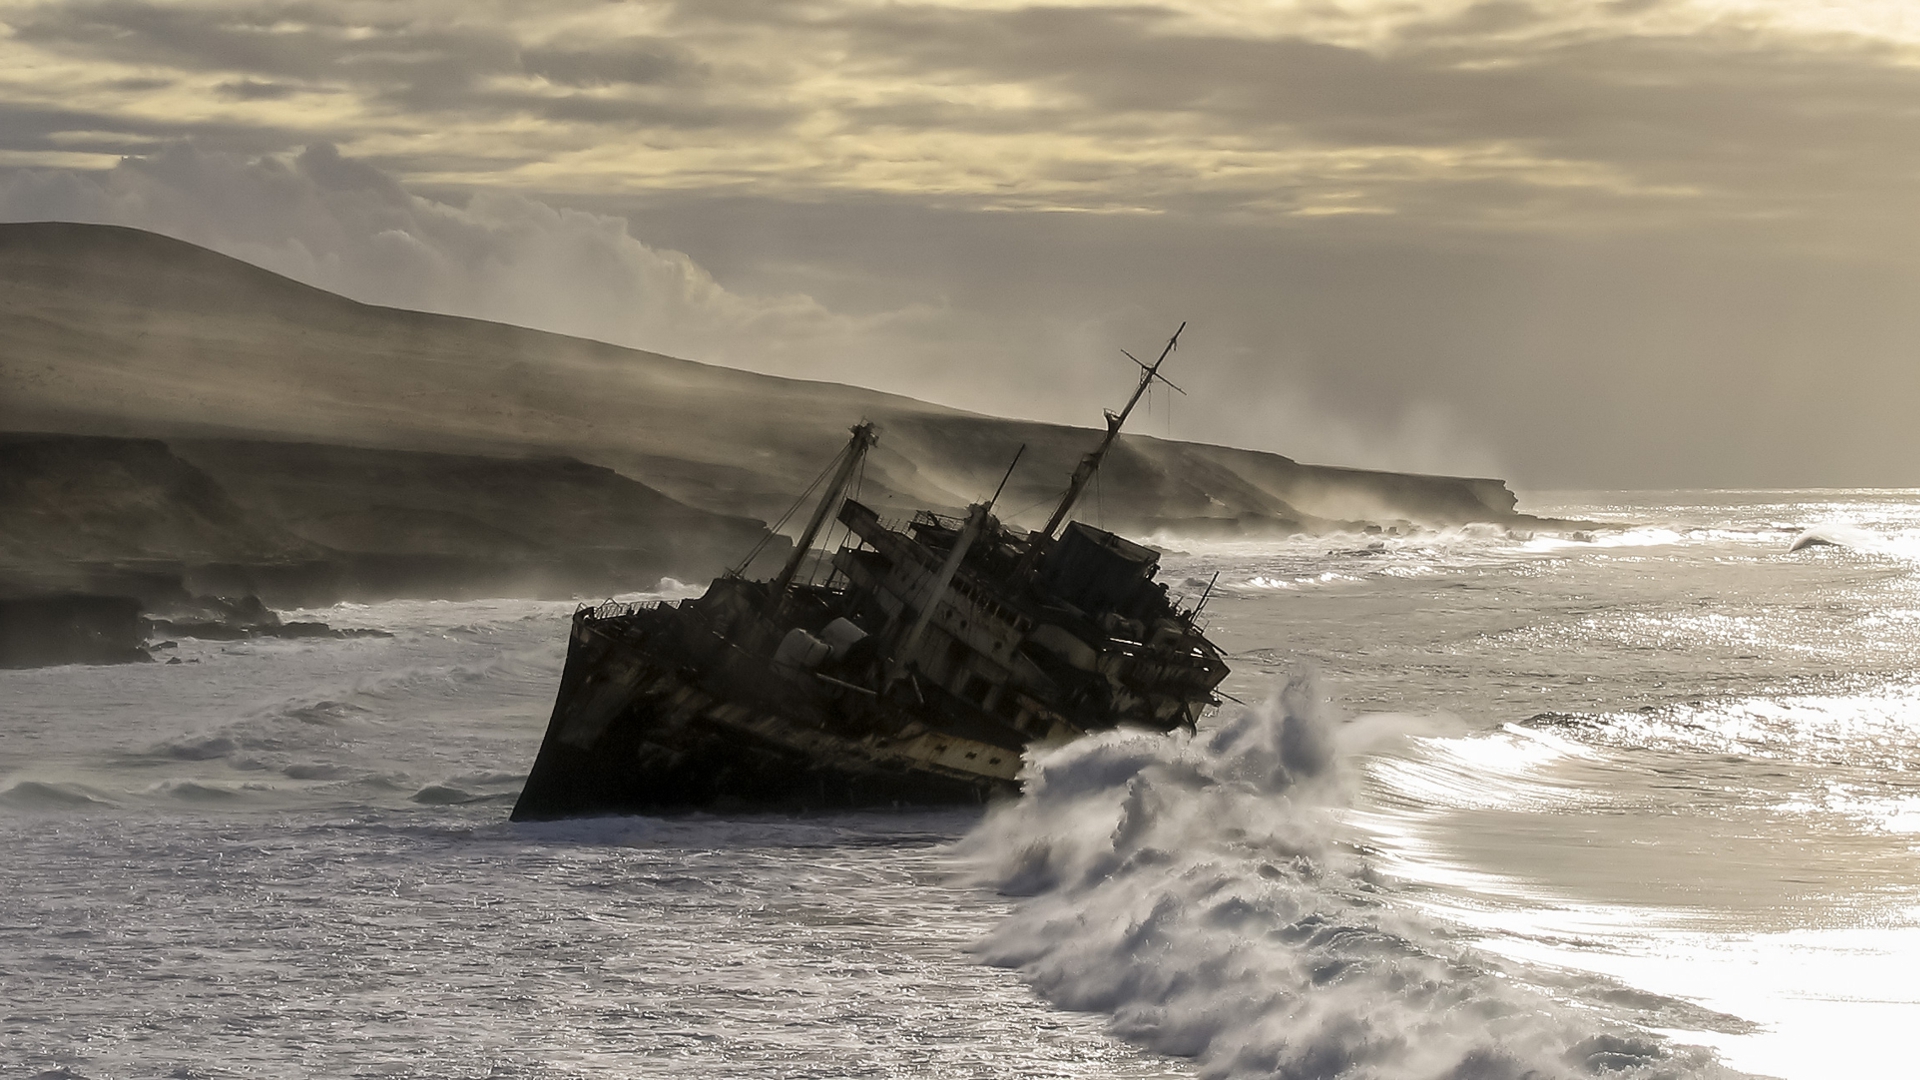 American Star Shipwreck Fuerteventura Canary Islands Atlantic Ocean Pedro Lopez Batista Sea Waves Mi 1920x1080